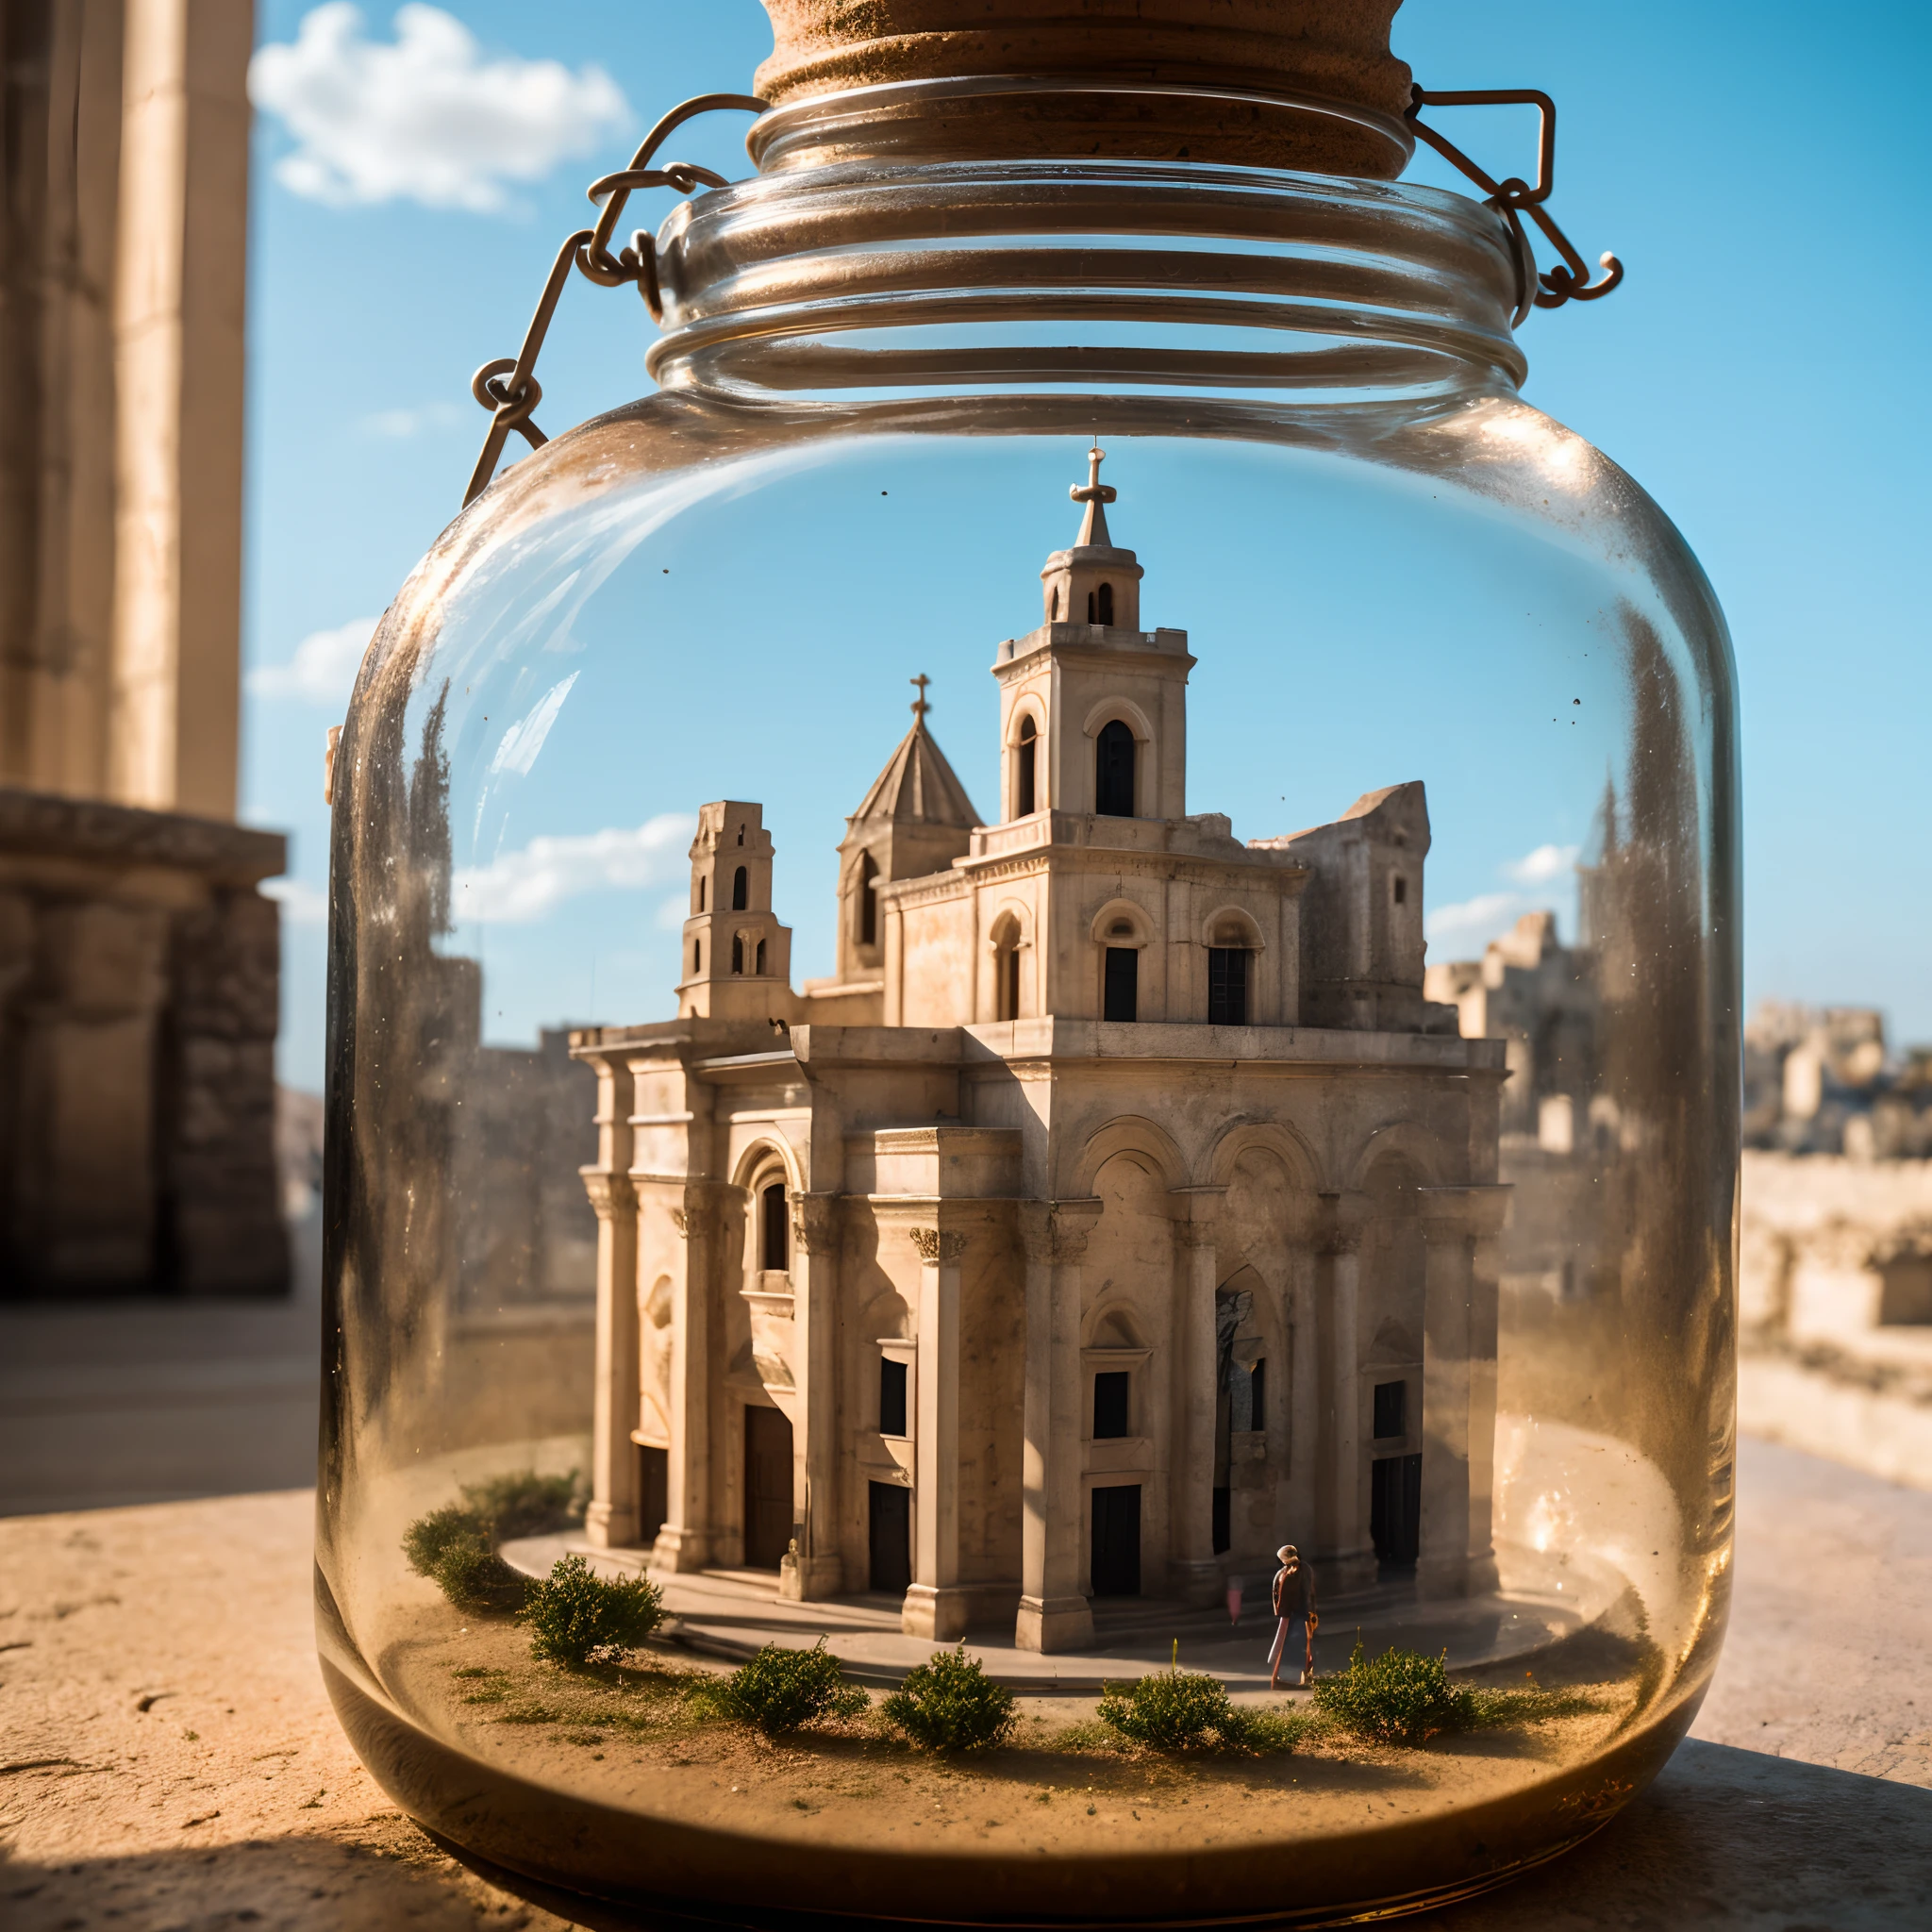 Kathedrale von Matera mit Glockenturm in einem quadratischen Glasgefäß mit Deckel, auf die Fensterbank stellen, Extrem detailliert, 8K, apokalyptischer Punk-Stil, Miniaturen, Makrofotografie in Nahaufnahme